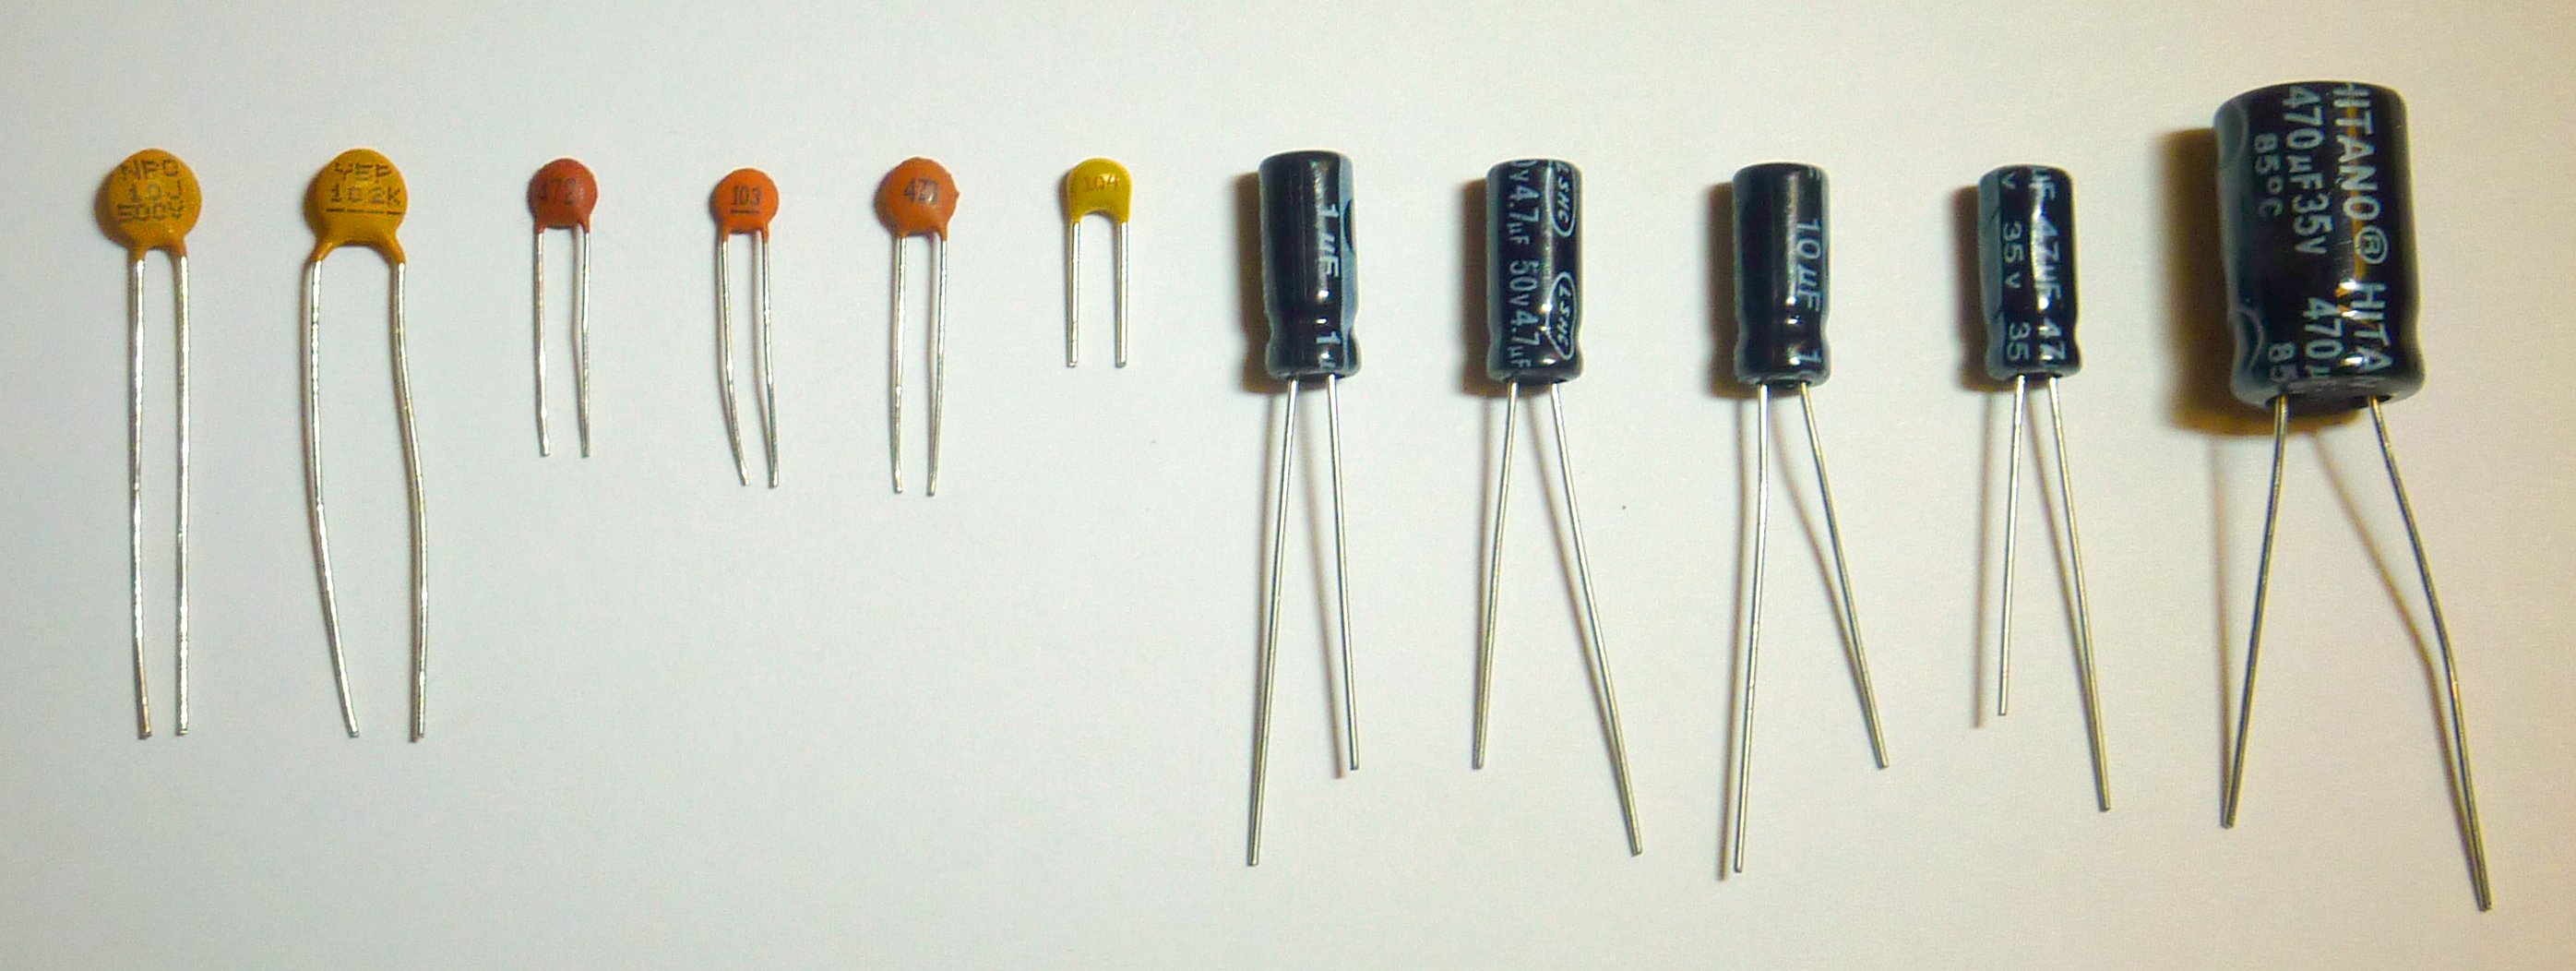 neonking:capacitorsinkit.jpg